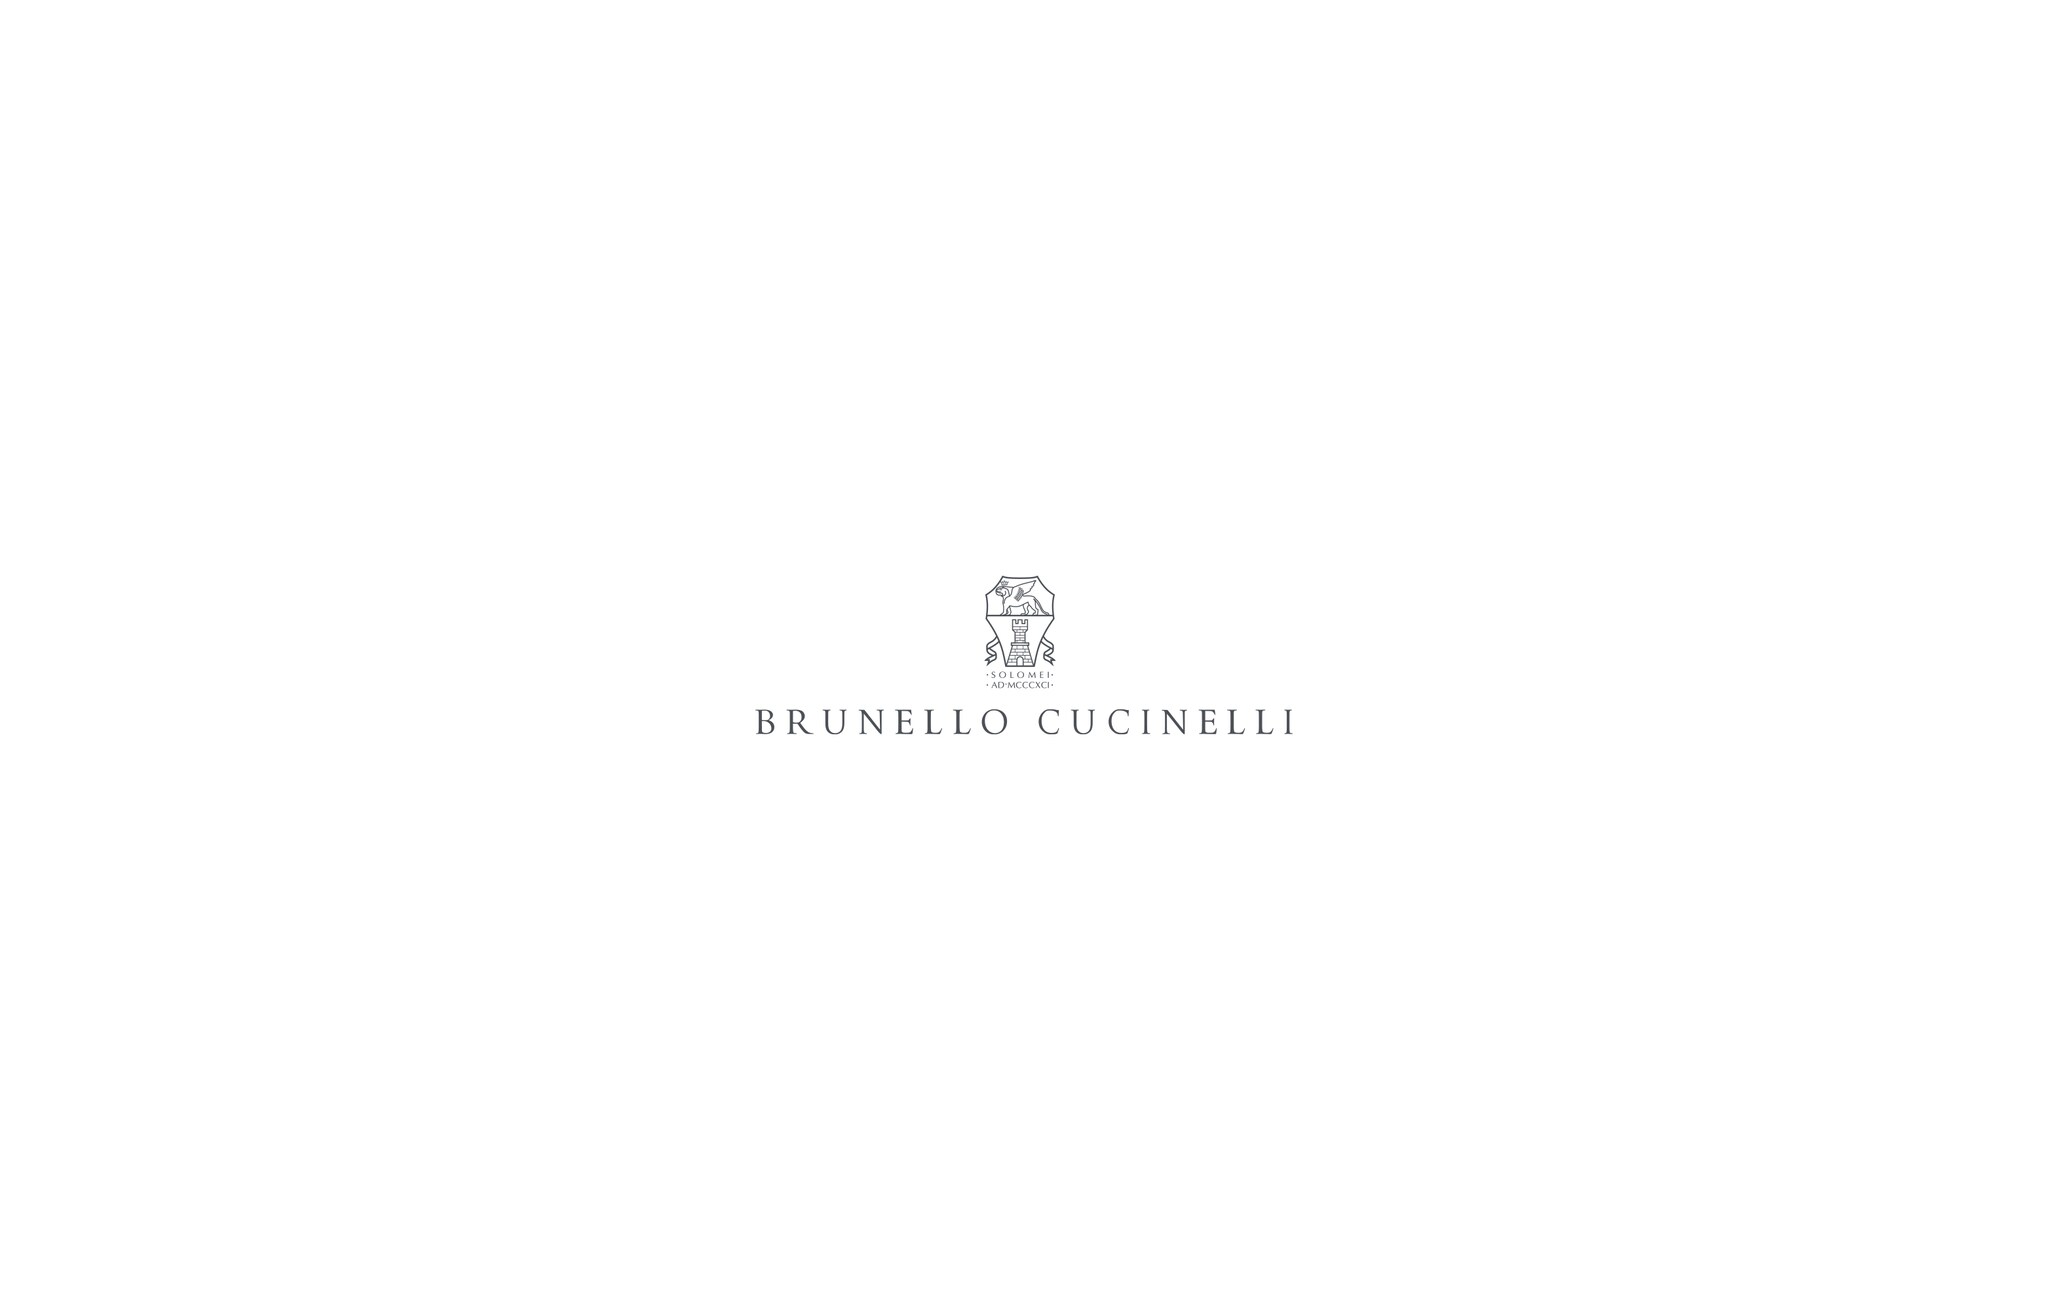  装饰镶珠的运动鞋 浅灰 女款 - Brunello Cucinelli 